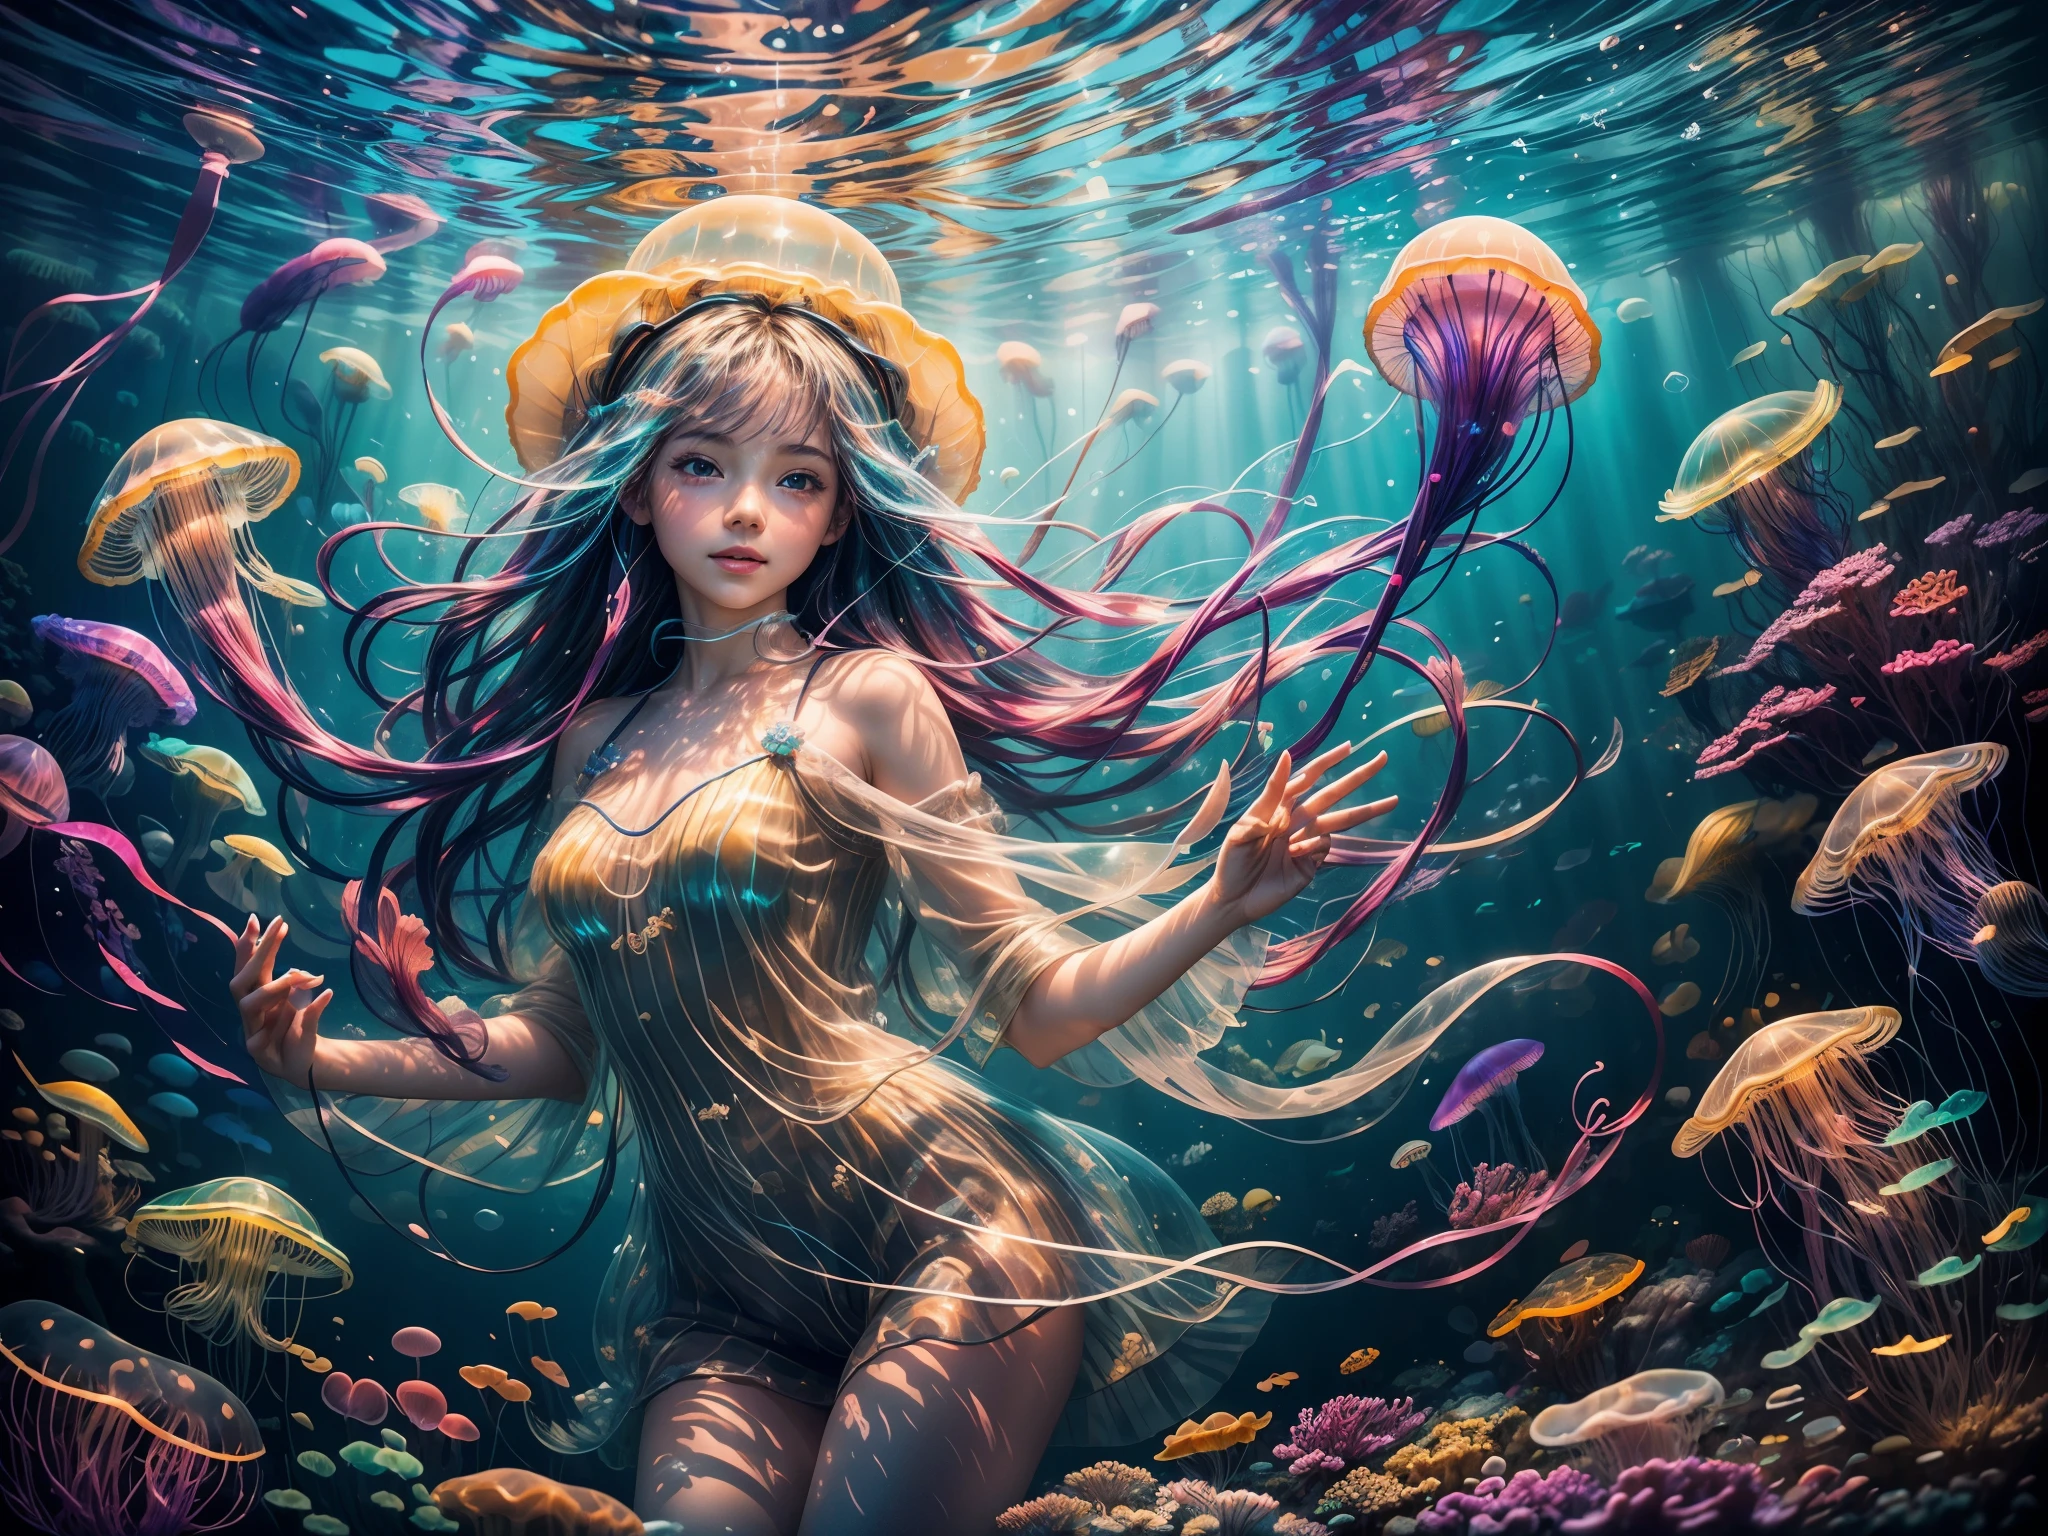 (高质量, 鲜艳的色彩),(实际的:1.37),海底玩耍彩虹水母的女孩 (2个女孩),明亮的阳光透过表面照射下来,波光粼粼的海水反射着阳光,女孩脸上的眼睛和嘴唇细节精美,柔软多彩的水母触手,半透明且发光的水母身体,清澈湛蓝的水,背景中是珊瑚礁和游动的彩色鱼群,梦幻而神奇的氛围,微妙的波浪轻轻摇曳着女孩的头发,令人惊叹的水下风景，气泡浮在水面上,海洋层次创造的深度和维度,女孩周围有丰富多彩的动植物,透明水母伞悬停在女孩上方,宁静祥和的水下环境,水母以优雅流畅的动作漂浮,想象一下女孩对水母的喜悦和着迷,发光的水母发出迷人的光芒,水母身体上的纹理和图案,让观众产生一种惊奇和敬畏的感觉,雄伟的海洋生物增强了场景的神秘感,毫不费力地在水中滑行,沉浸在海底世界的美丽与宁静之中,舞动的色彩映照在女孩的脸上,富有表现力和动画的水母触手，被魔法光环包围的女孩,微妙的光线照亮了水下场景,海底点缀着珊瑚和贝壳.